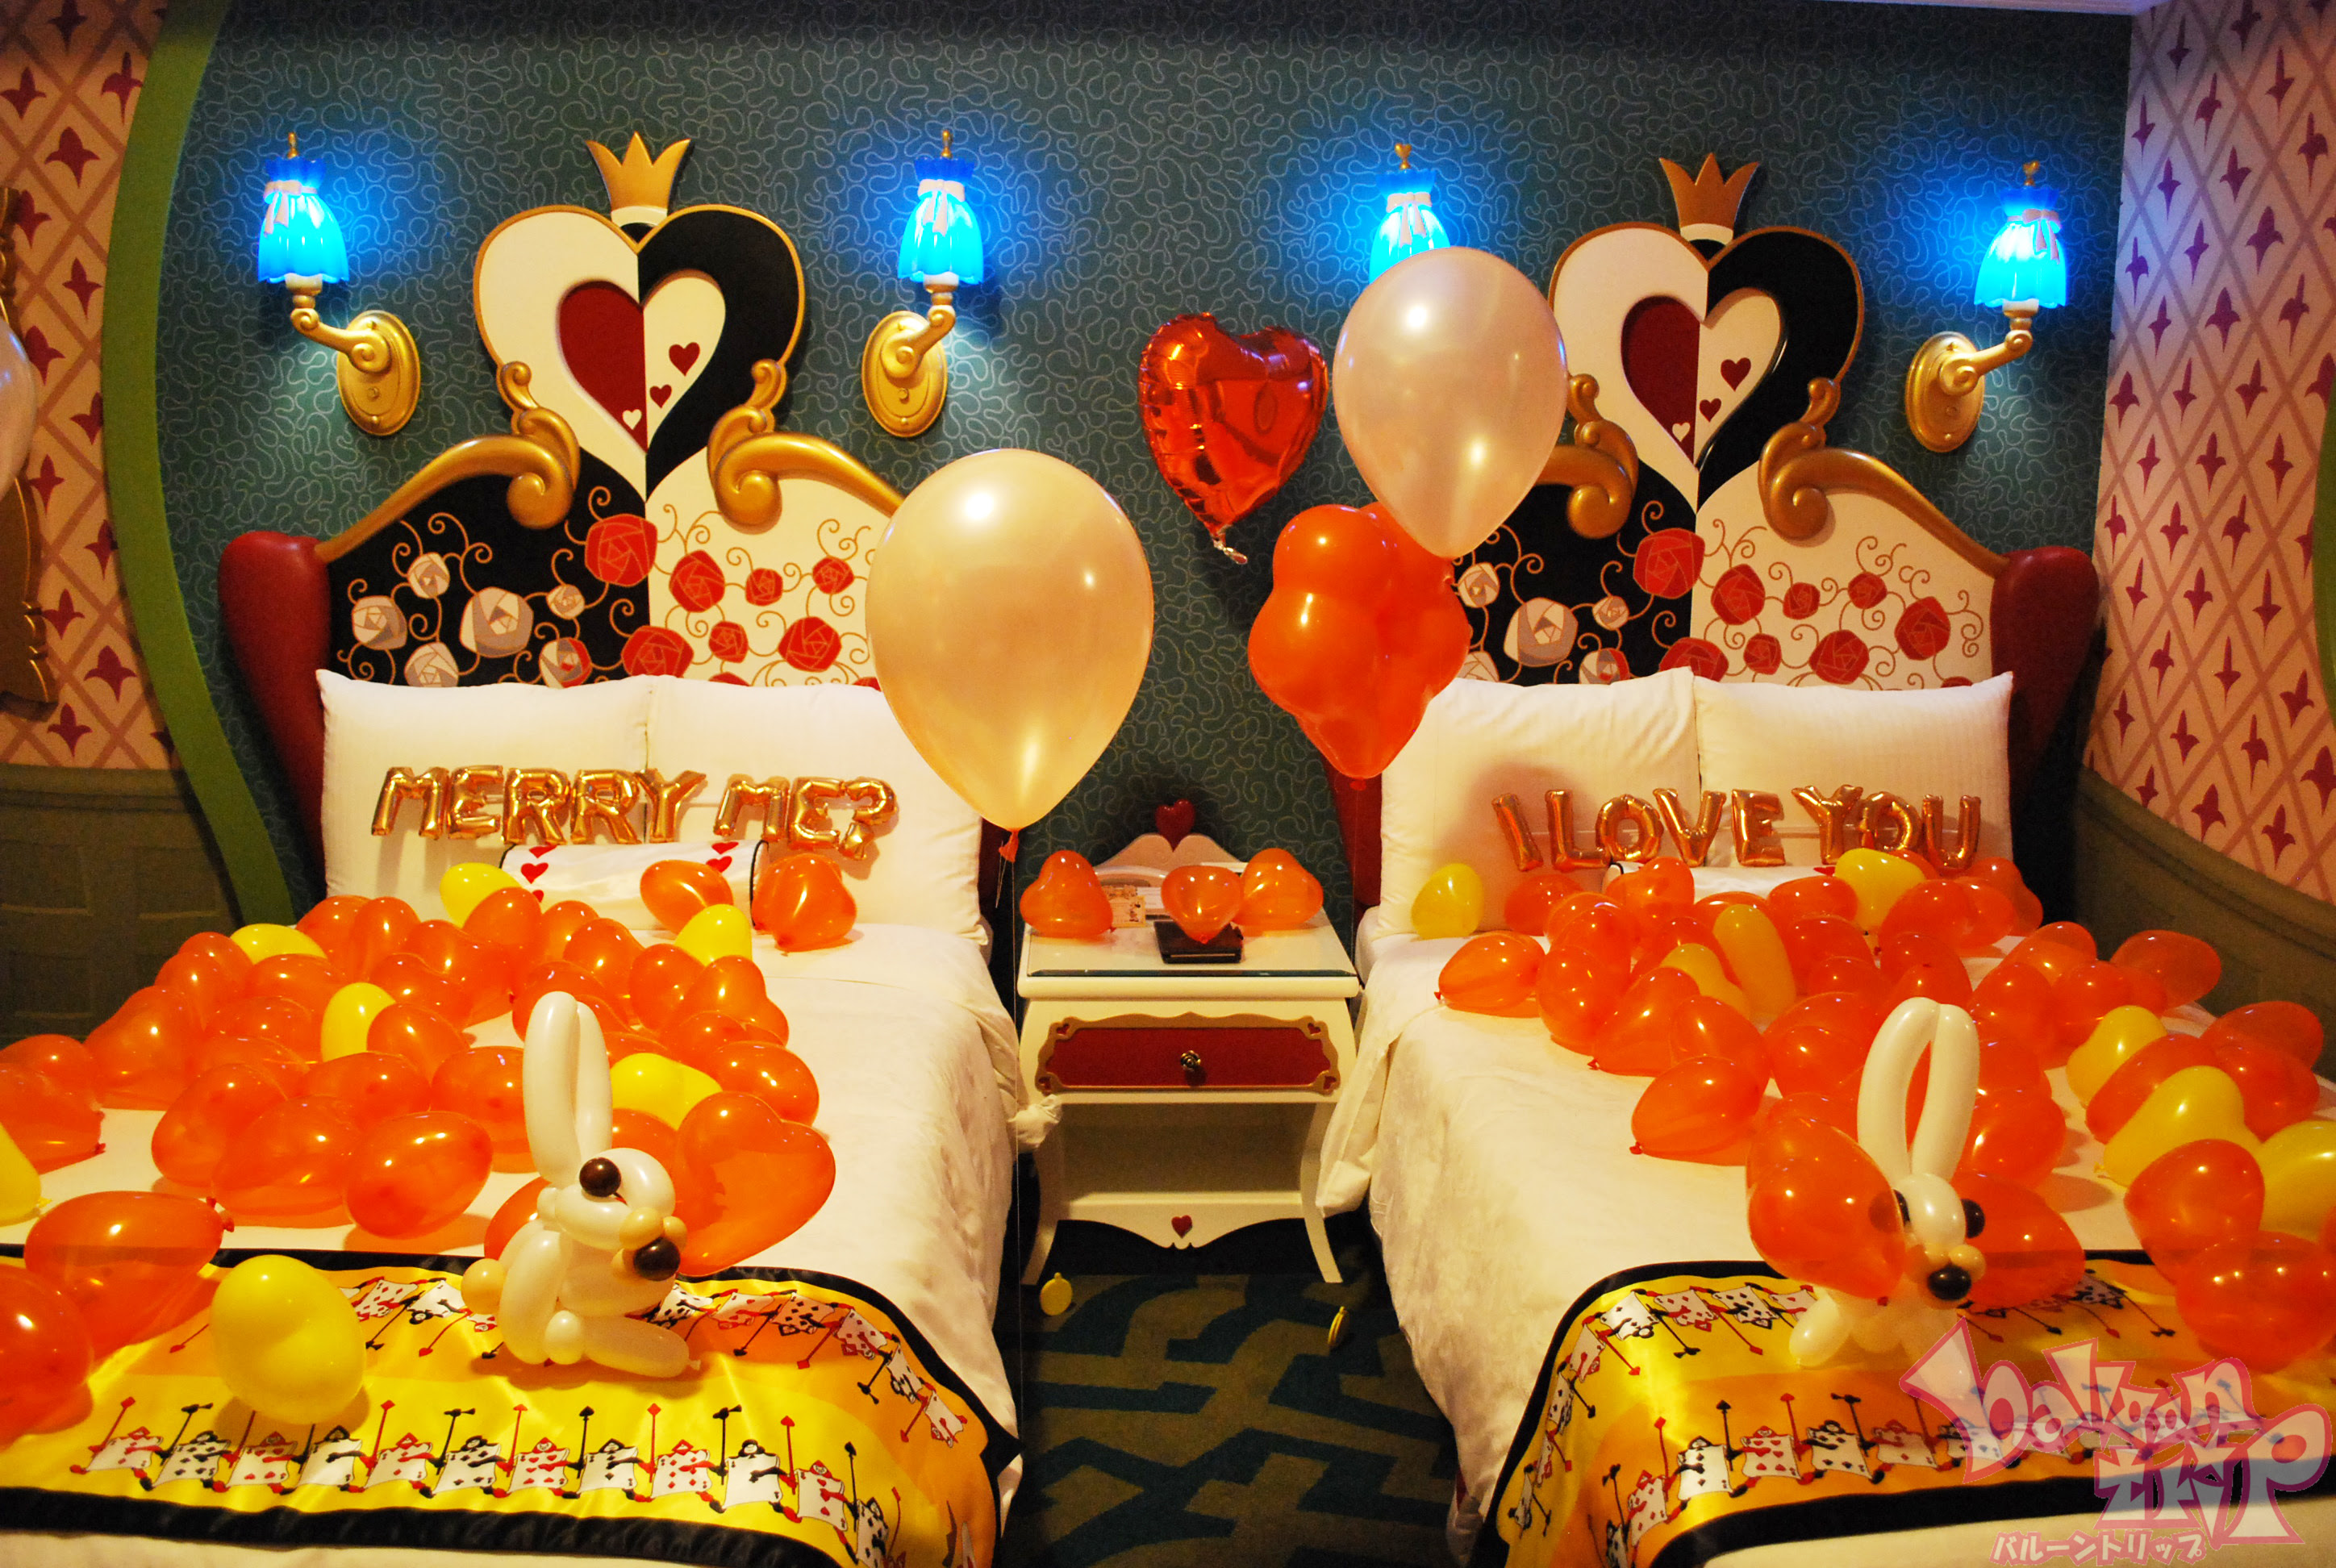 ディズニーランドホテルで最高の演出を バルーン出張 デザイン 演出 バルーントリップ Balloontrip